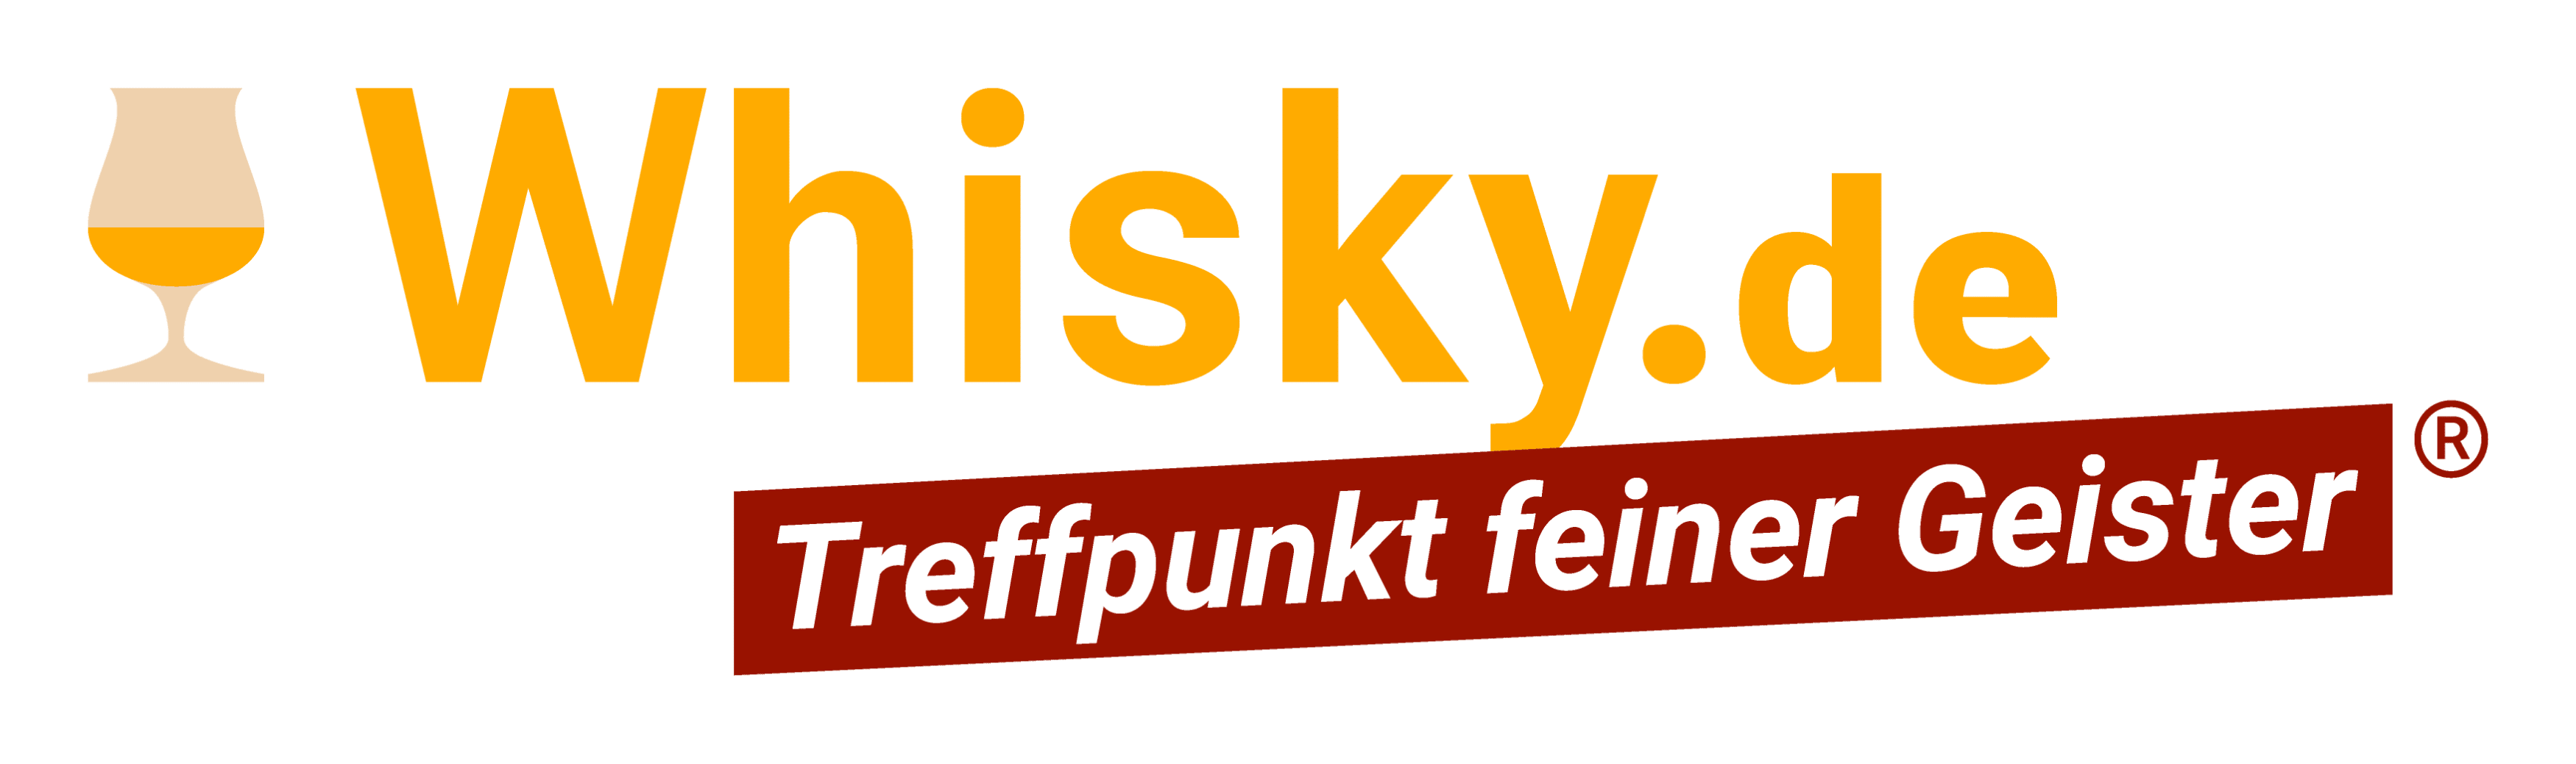 Whisky.de | Logo | Kundenreferenz